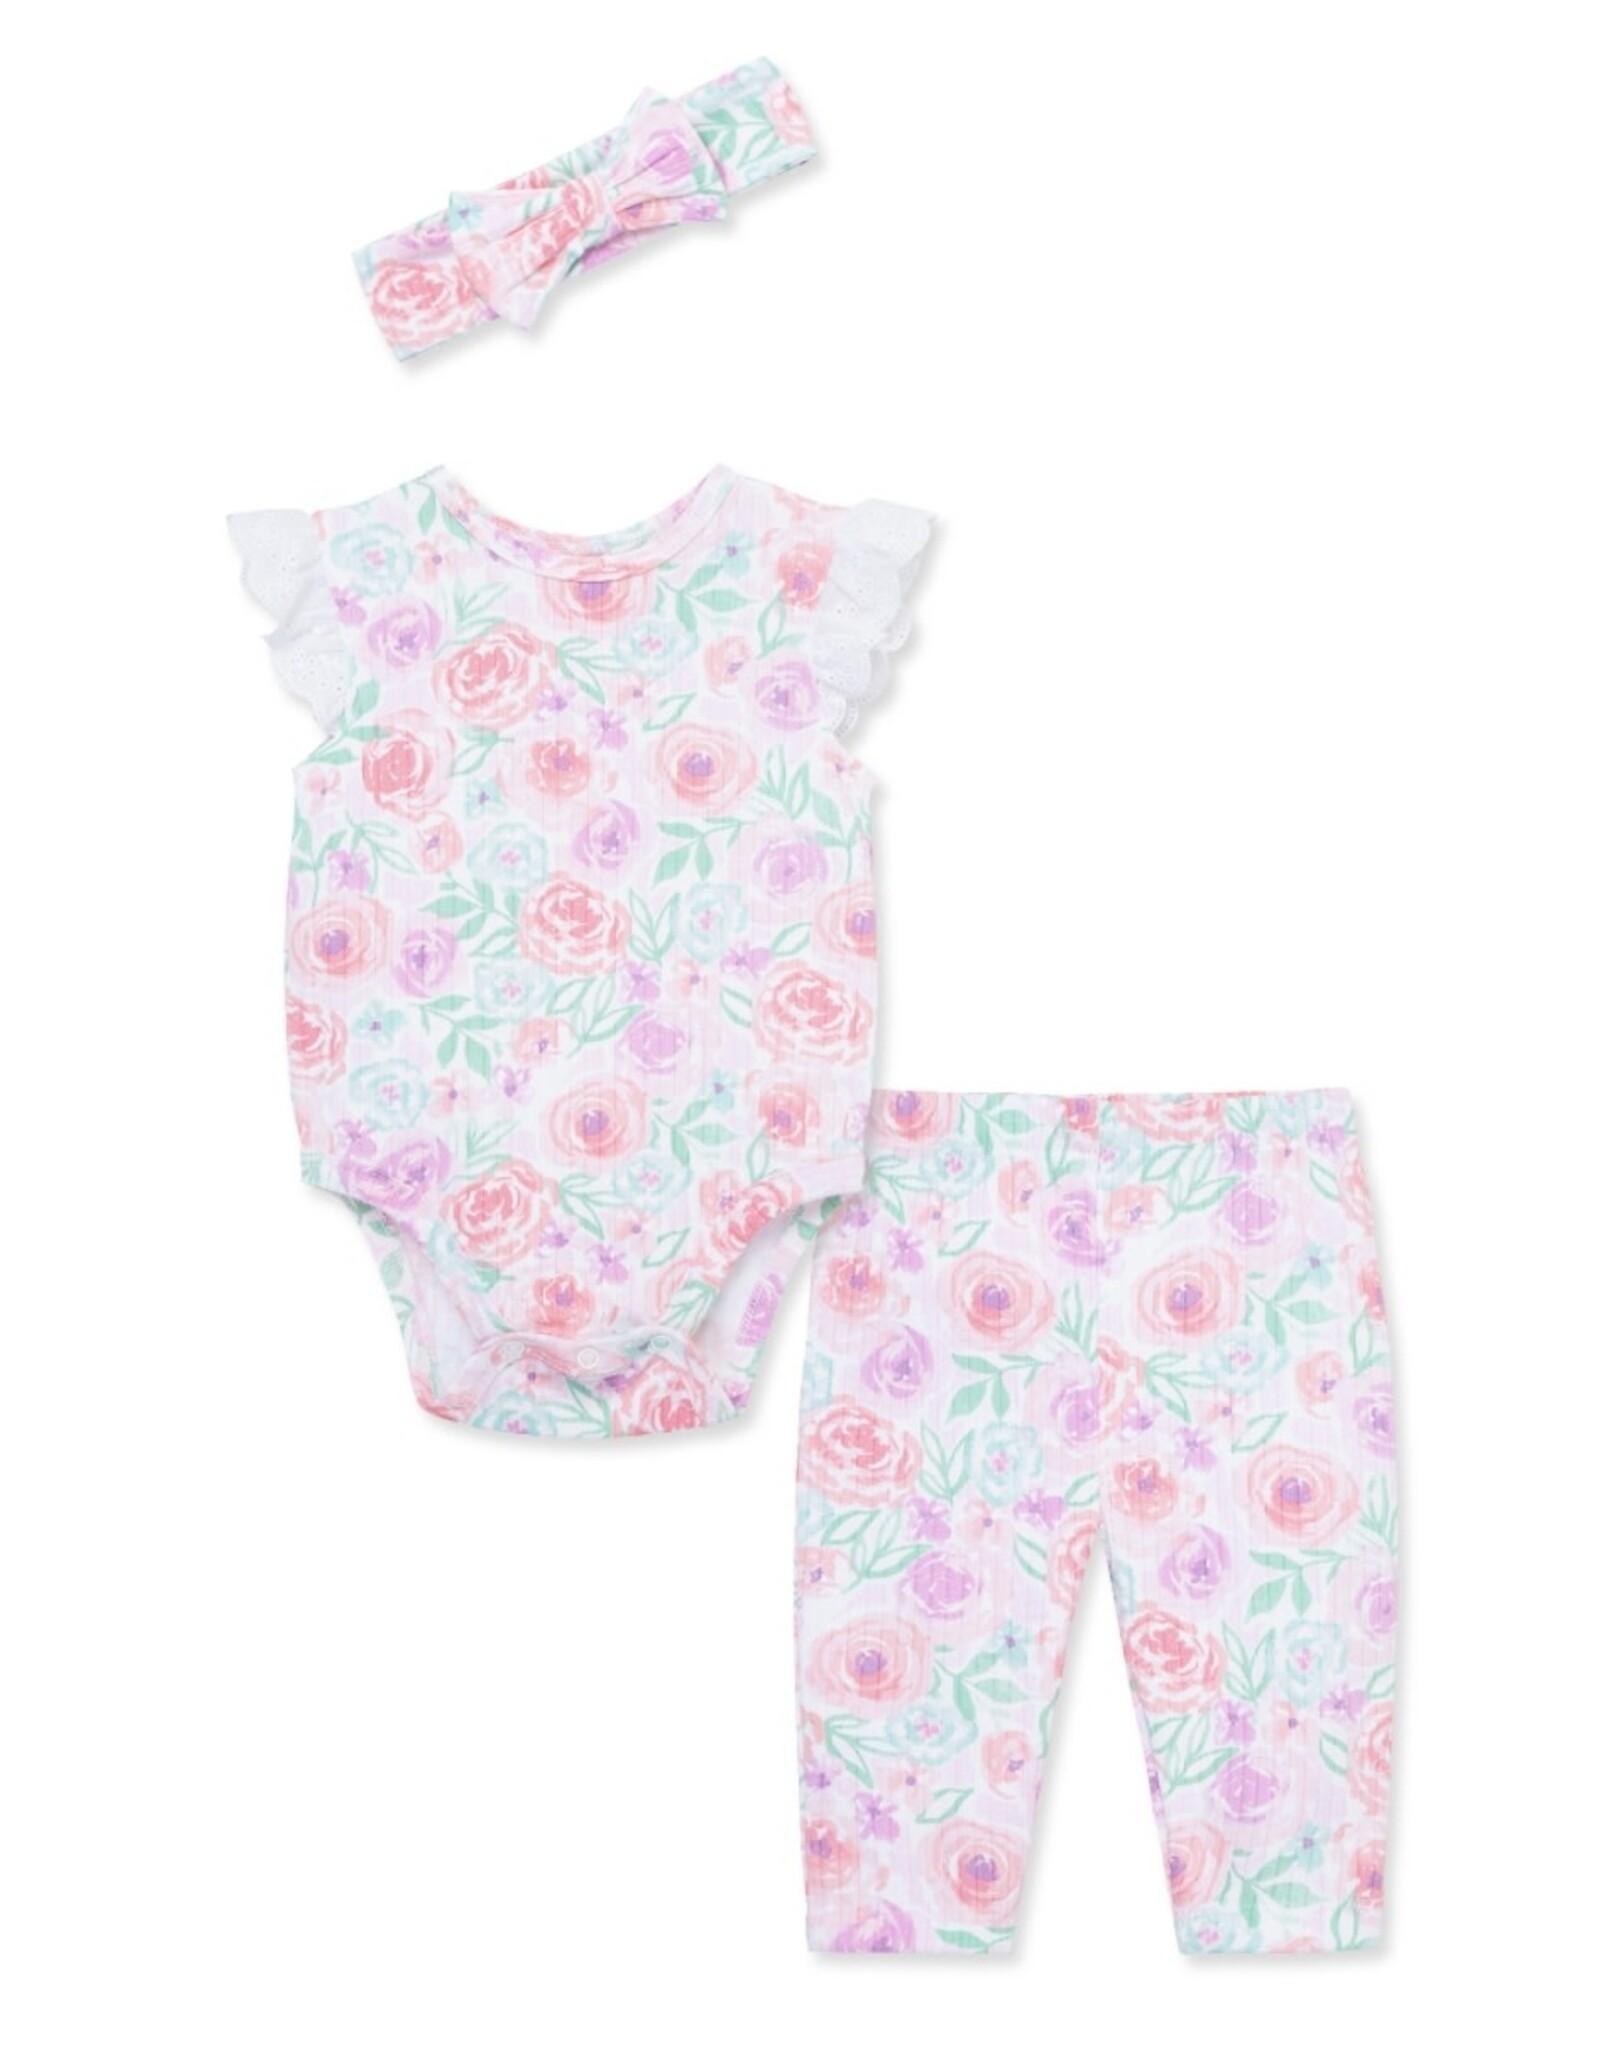 Little Me Little Me- Floral Wash Bodysit Pant Set